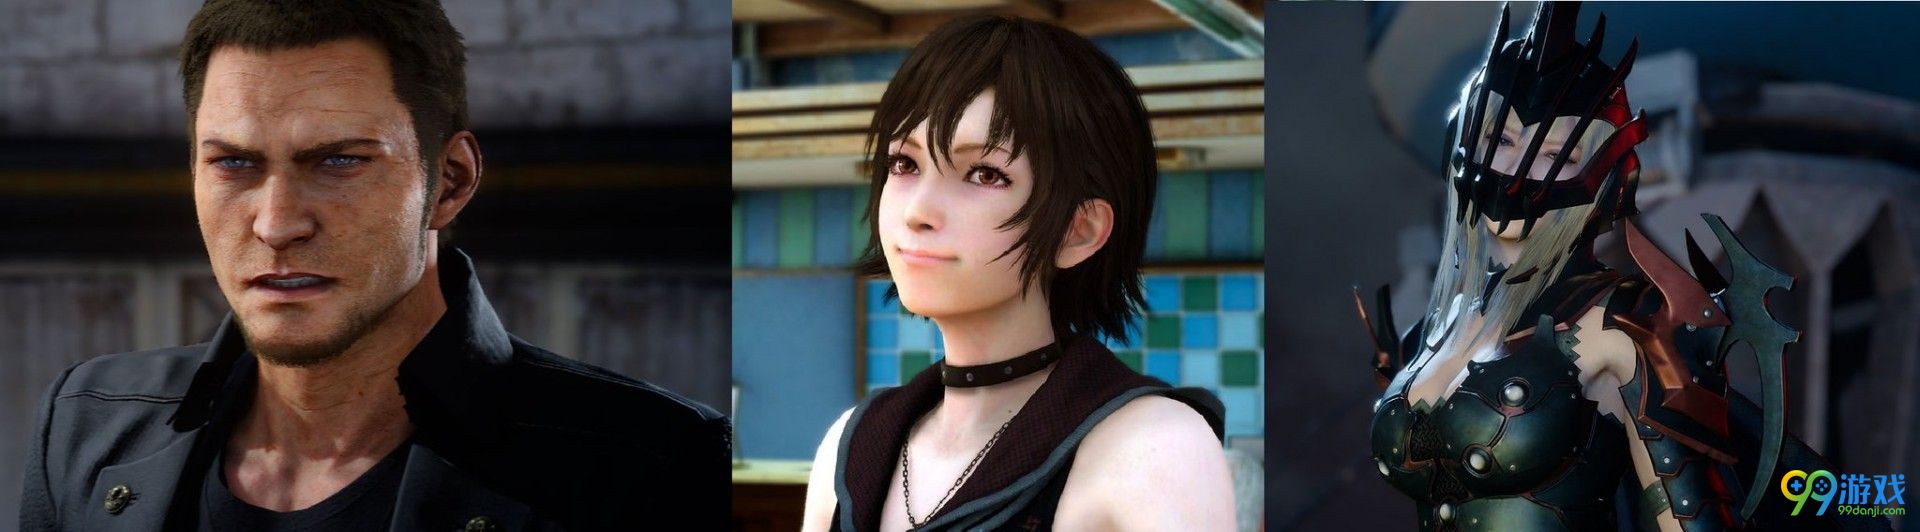 《最终幻想15》DLC将加入新角色 女龙骑正式入队